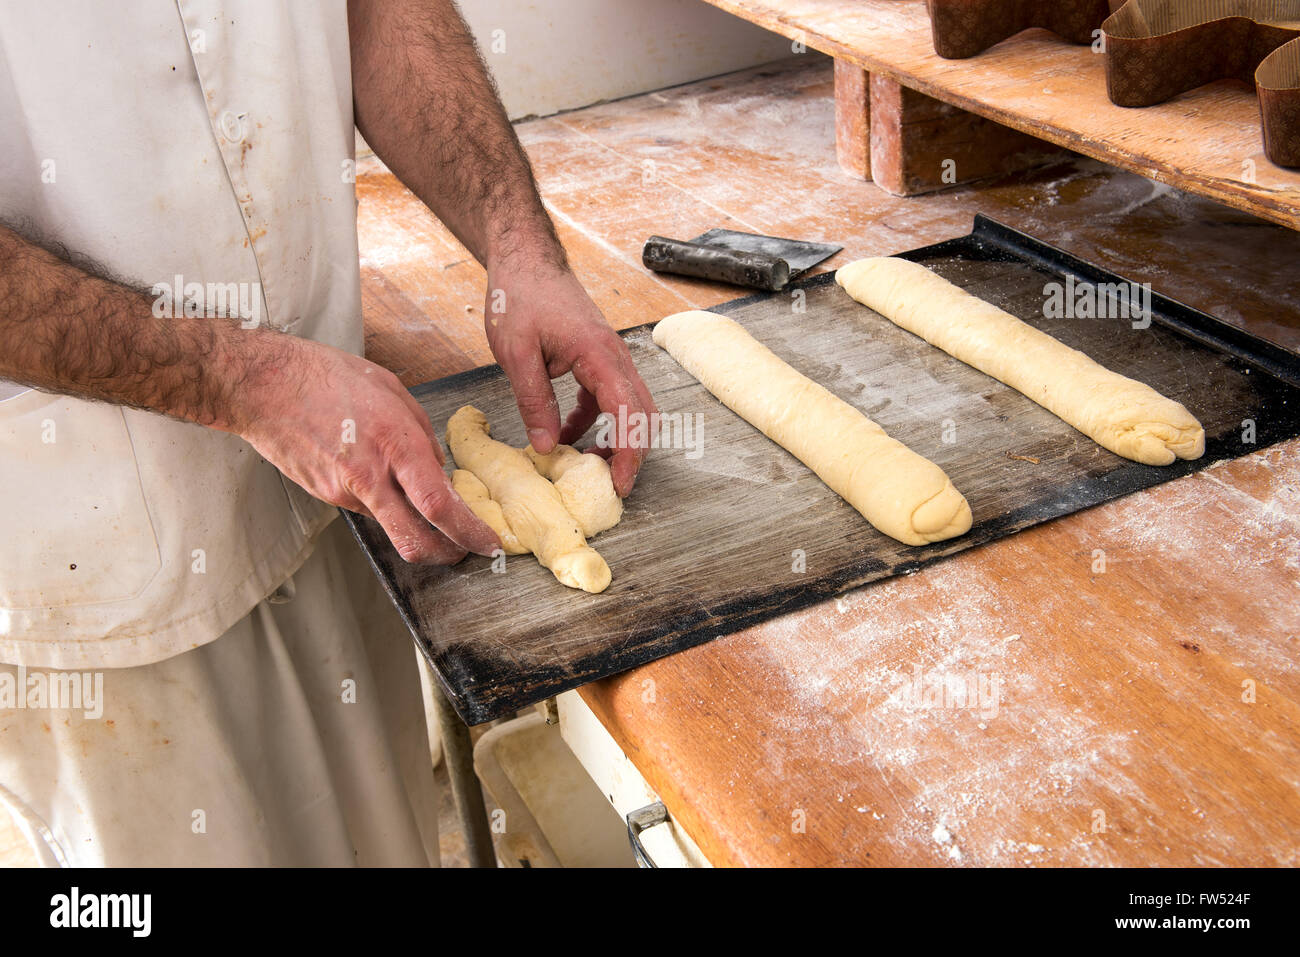 Baker travailler avec pâte non cuite en formant des rouleaux longs et formes, Close up de ses mains et une longue table en bois Banque D'Images